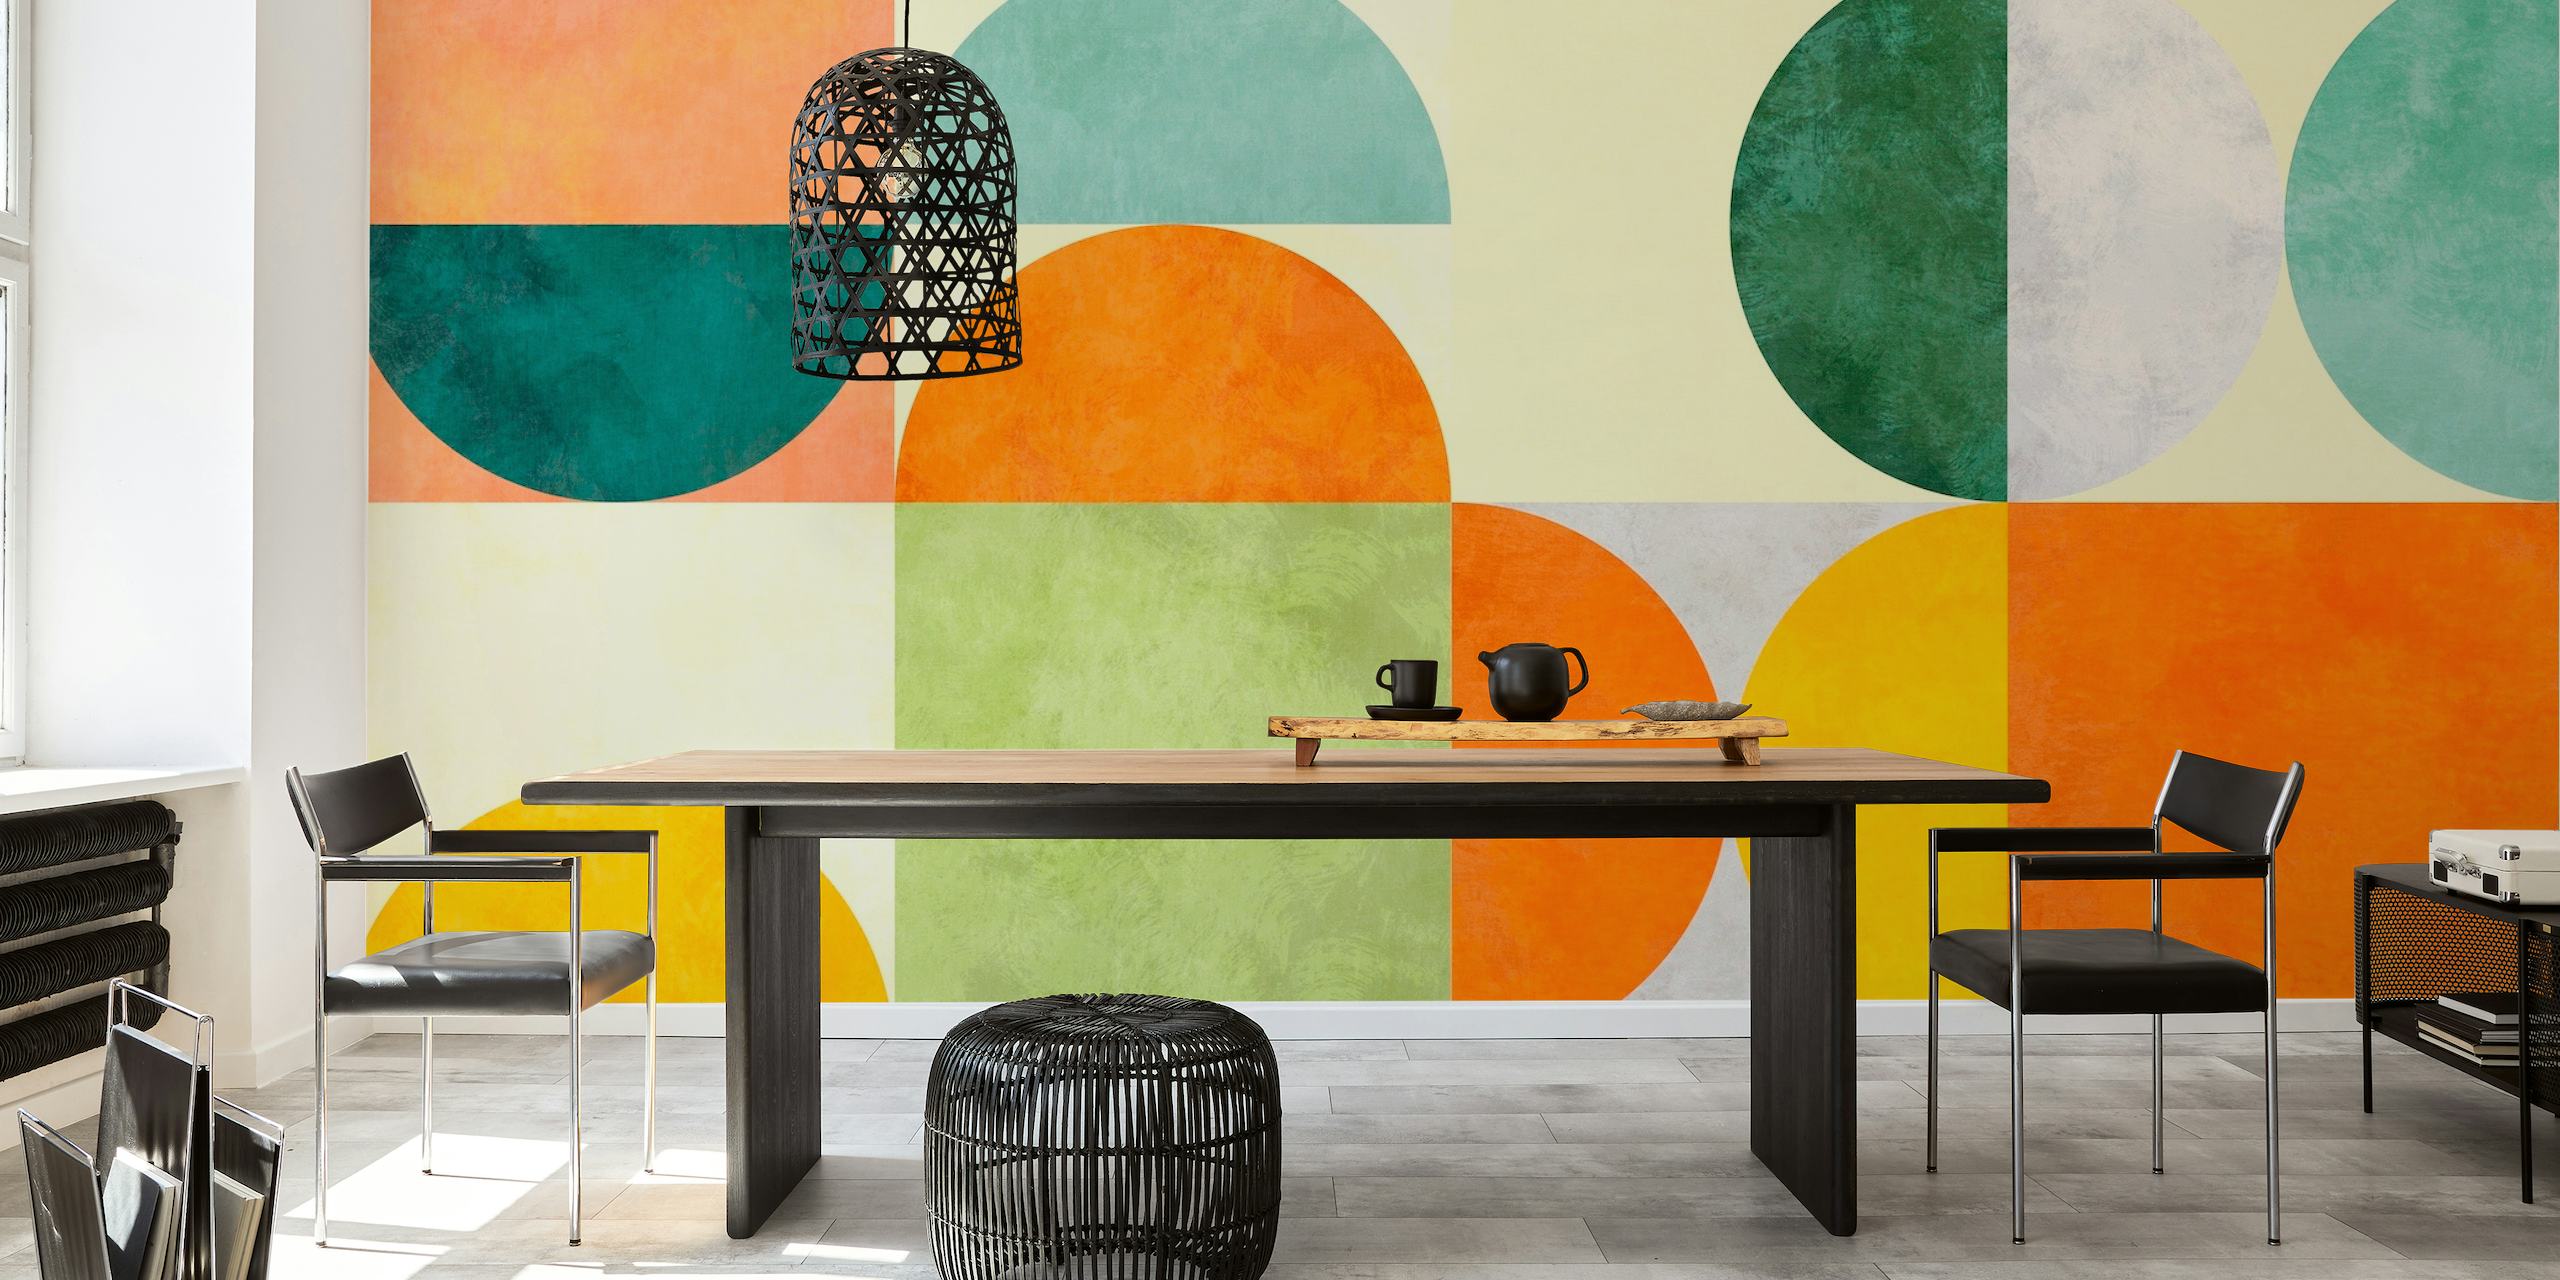 Fototapeta Bauhaus Retro Geometry 2 przedstawiająca minimalistyczne kształty w pastelowych kolorach